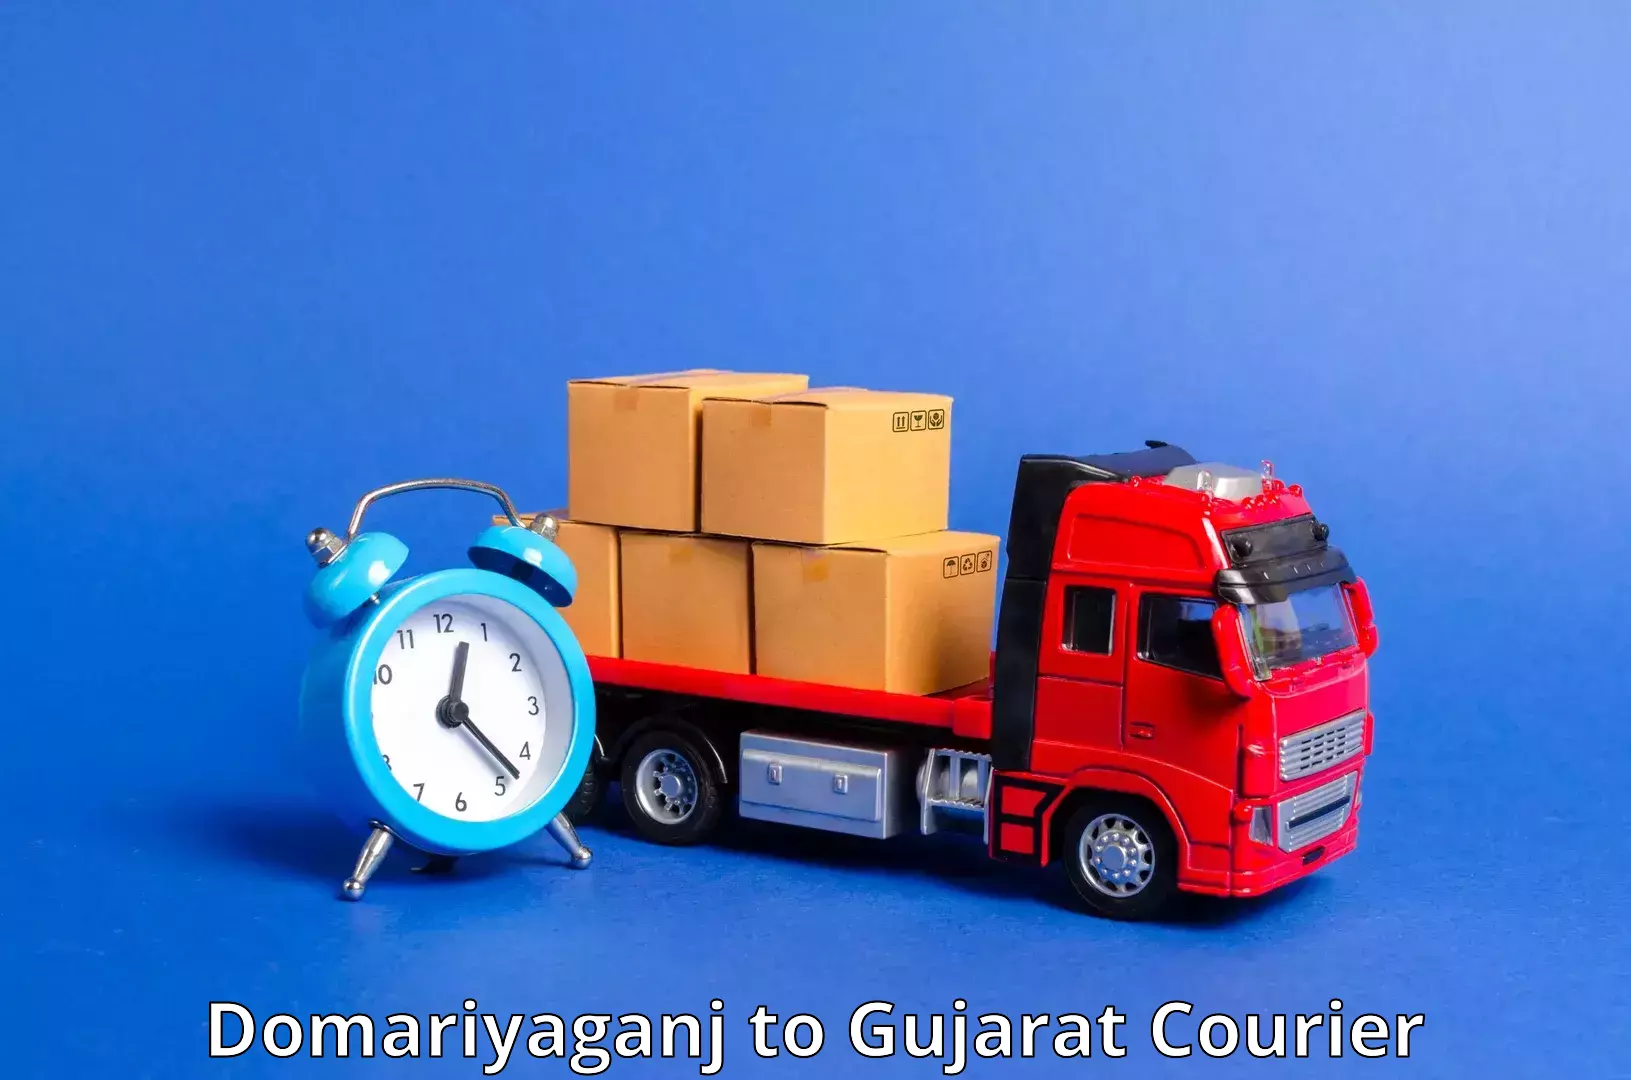 Large package courier Domariyaganj to Kadi